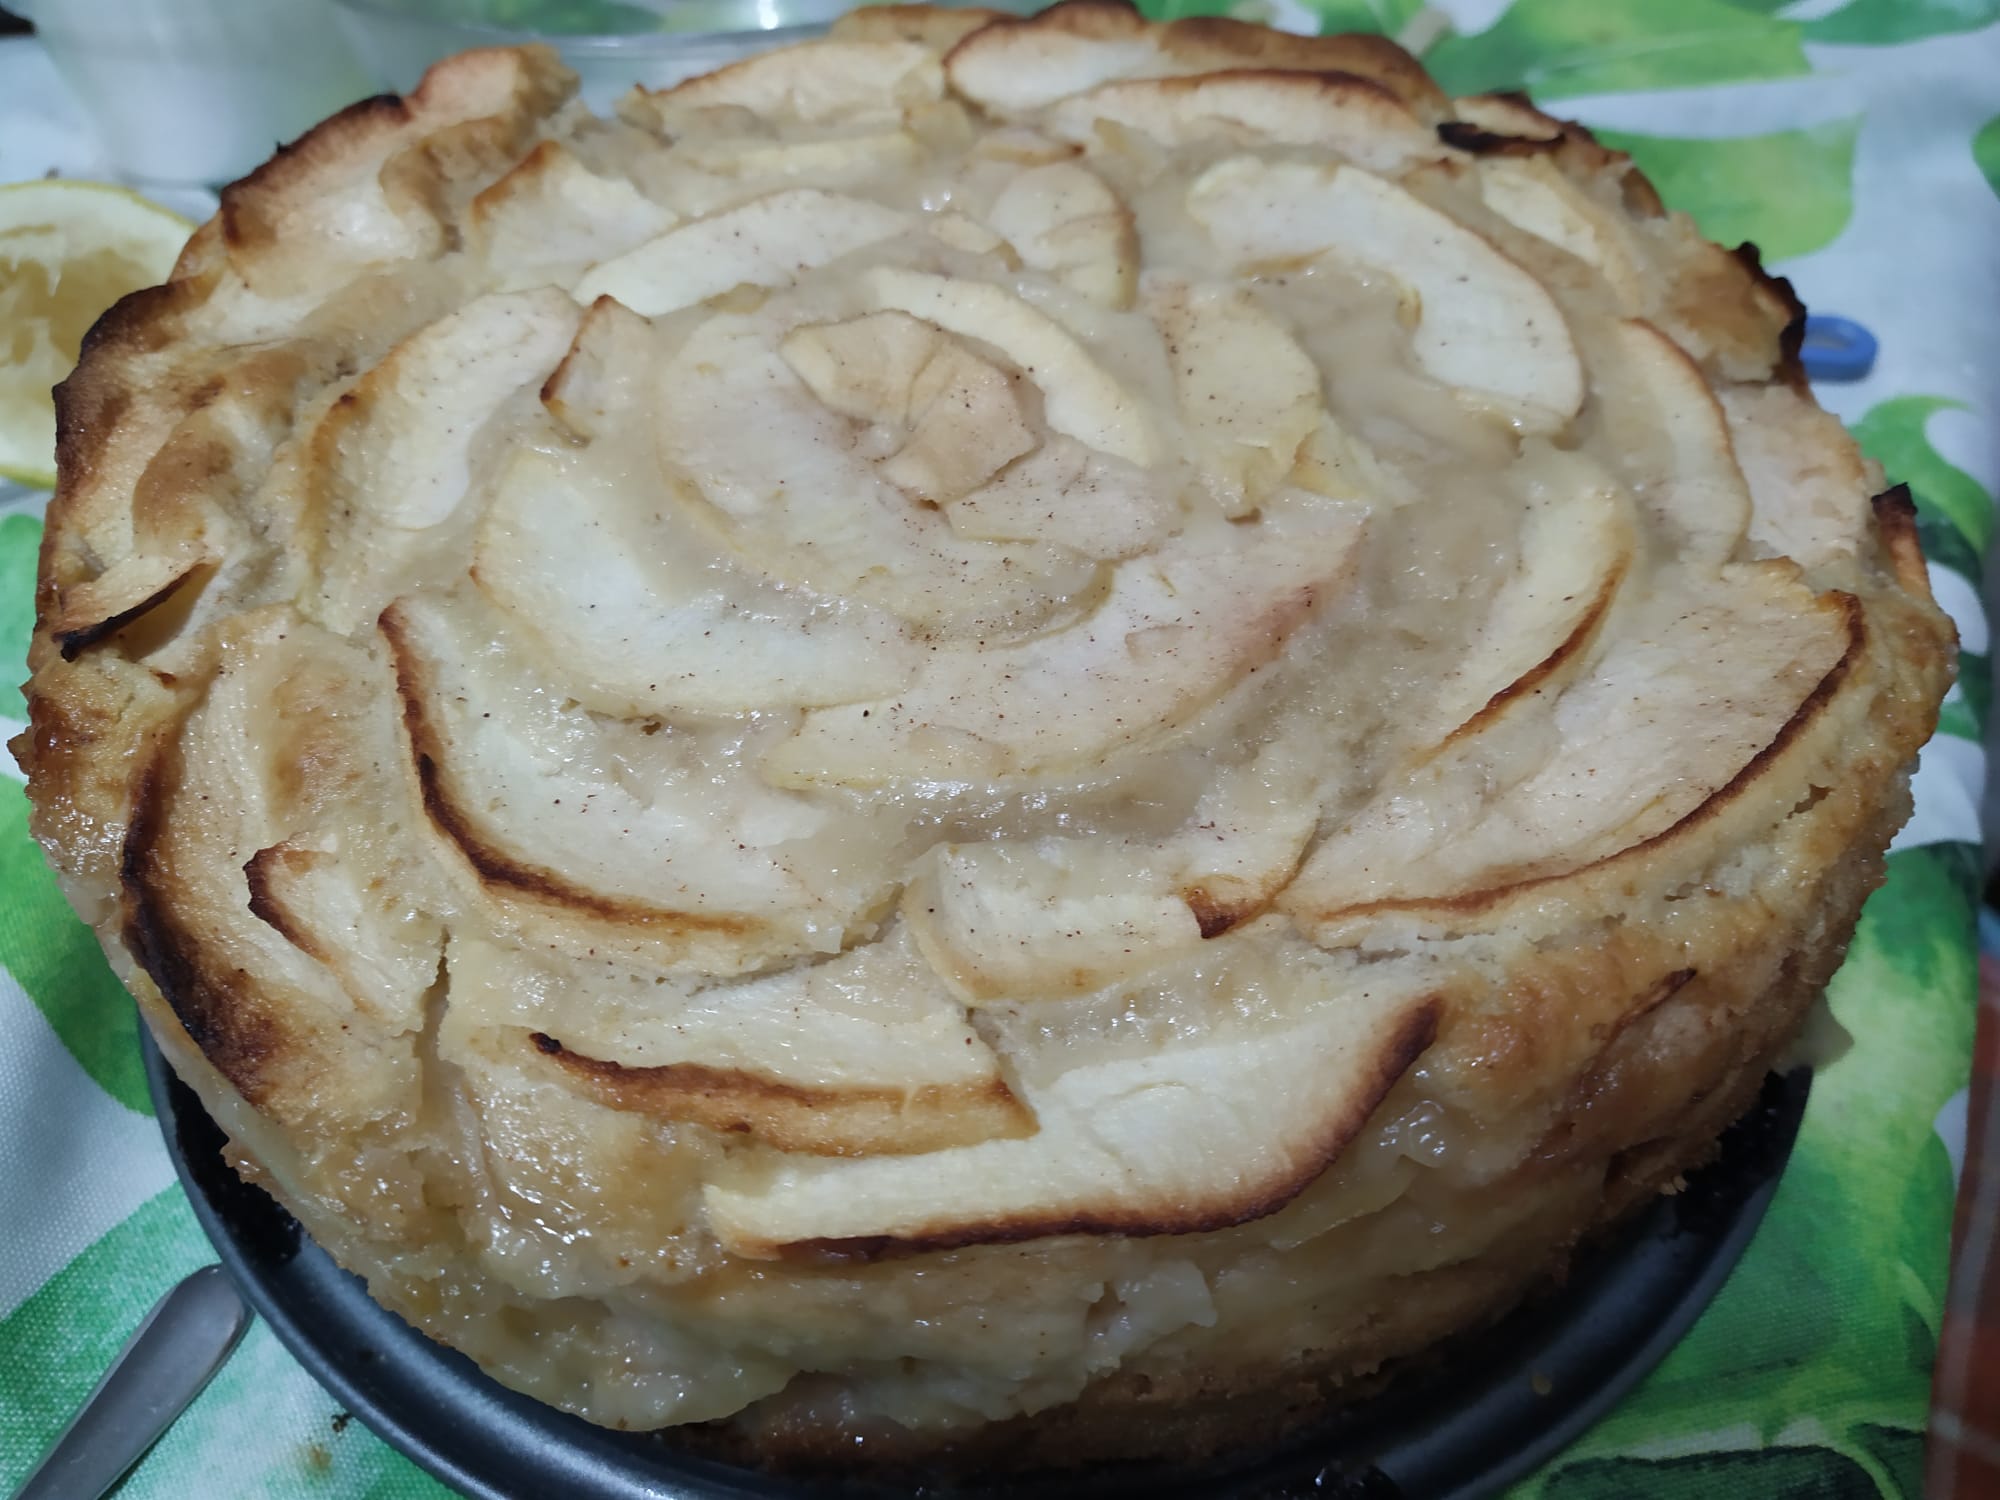 la torta di mele di torta Maria risulta morbida, fresca e leggera. Le mele, poste all'interno dell'impasto diventeranno una fresca crema. 